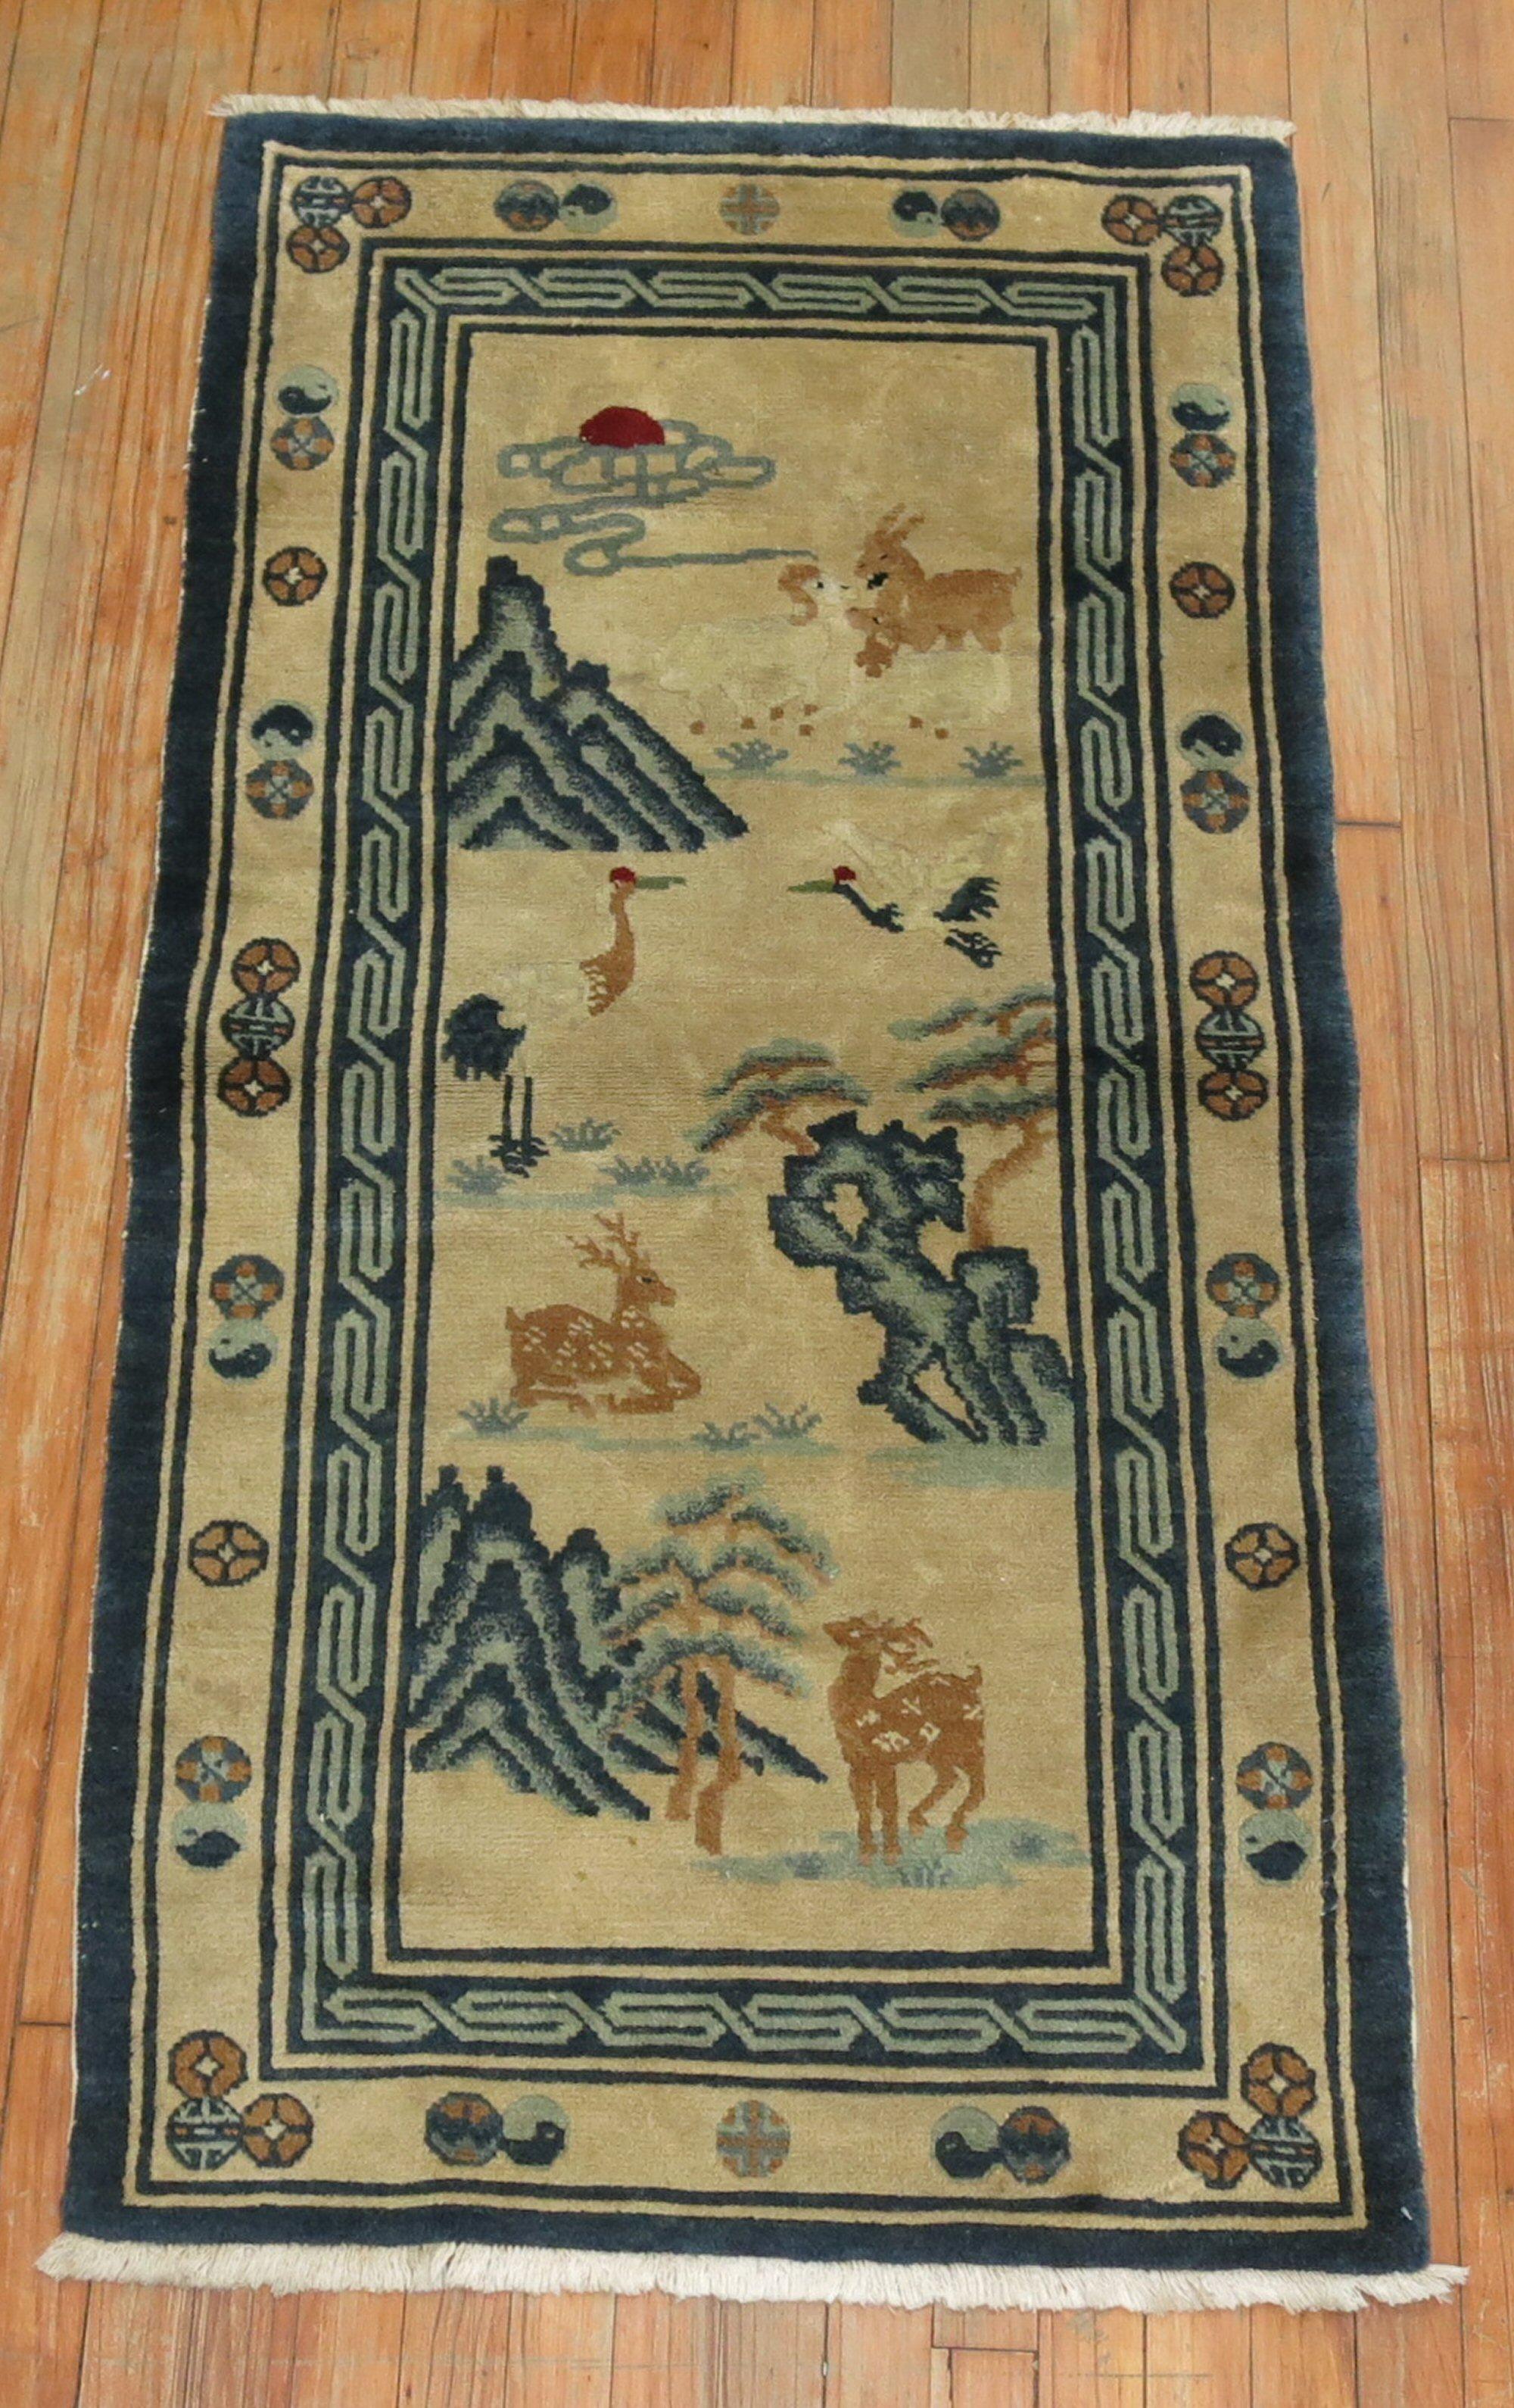 Ein elfenbeinfarbener chinesischer Peking-Teppich mit einem malerischen Tiermotiv. 2 Hirsche, Vögel, eine Ziege, ein Kaninchen und ein Schwan. Auch einige schöne blaue Farben, um 1940

Maße: 2'6